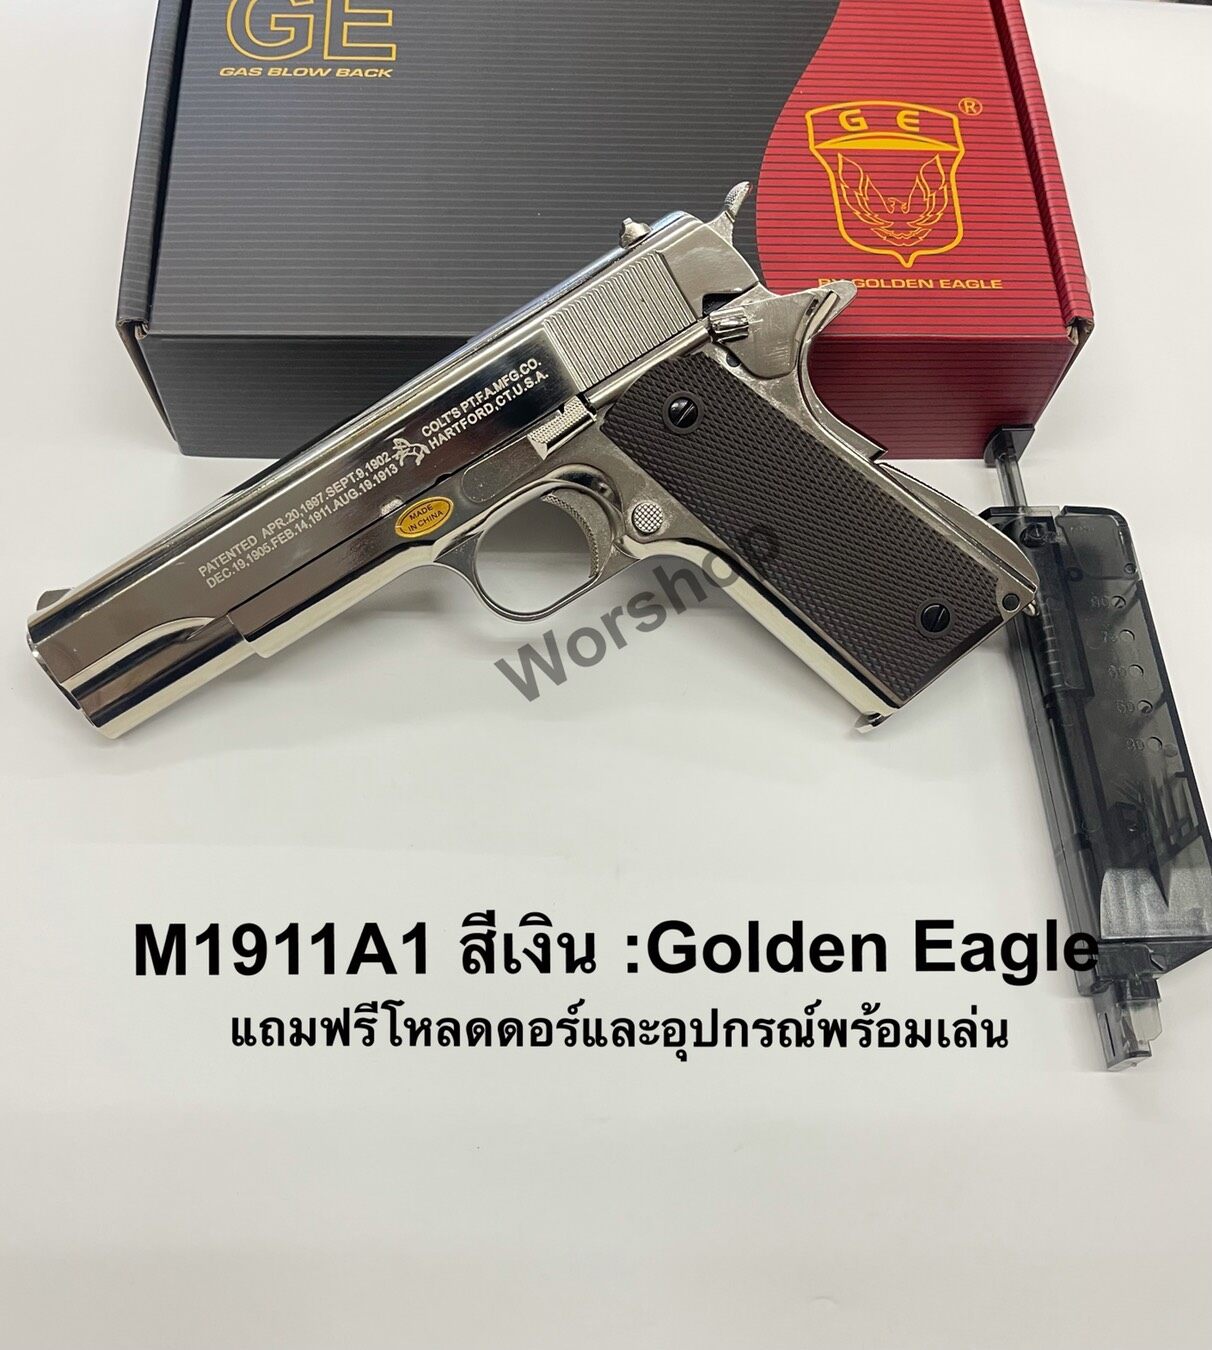 ปืนบีบีกัน รุ่น M1911A1 สีเงินเงา ค่าย Golden Eagle ในกล่องมีโหลดเดอร์แถม +อุปกรณ์พร้อมเล่น มือ1 เก็บเงินปลายทางได้